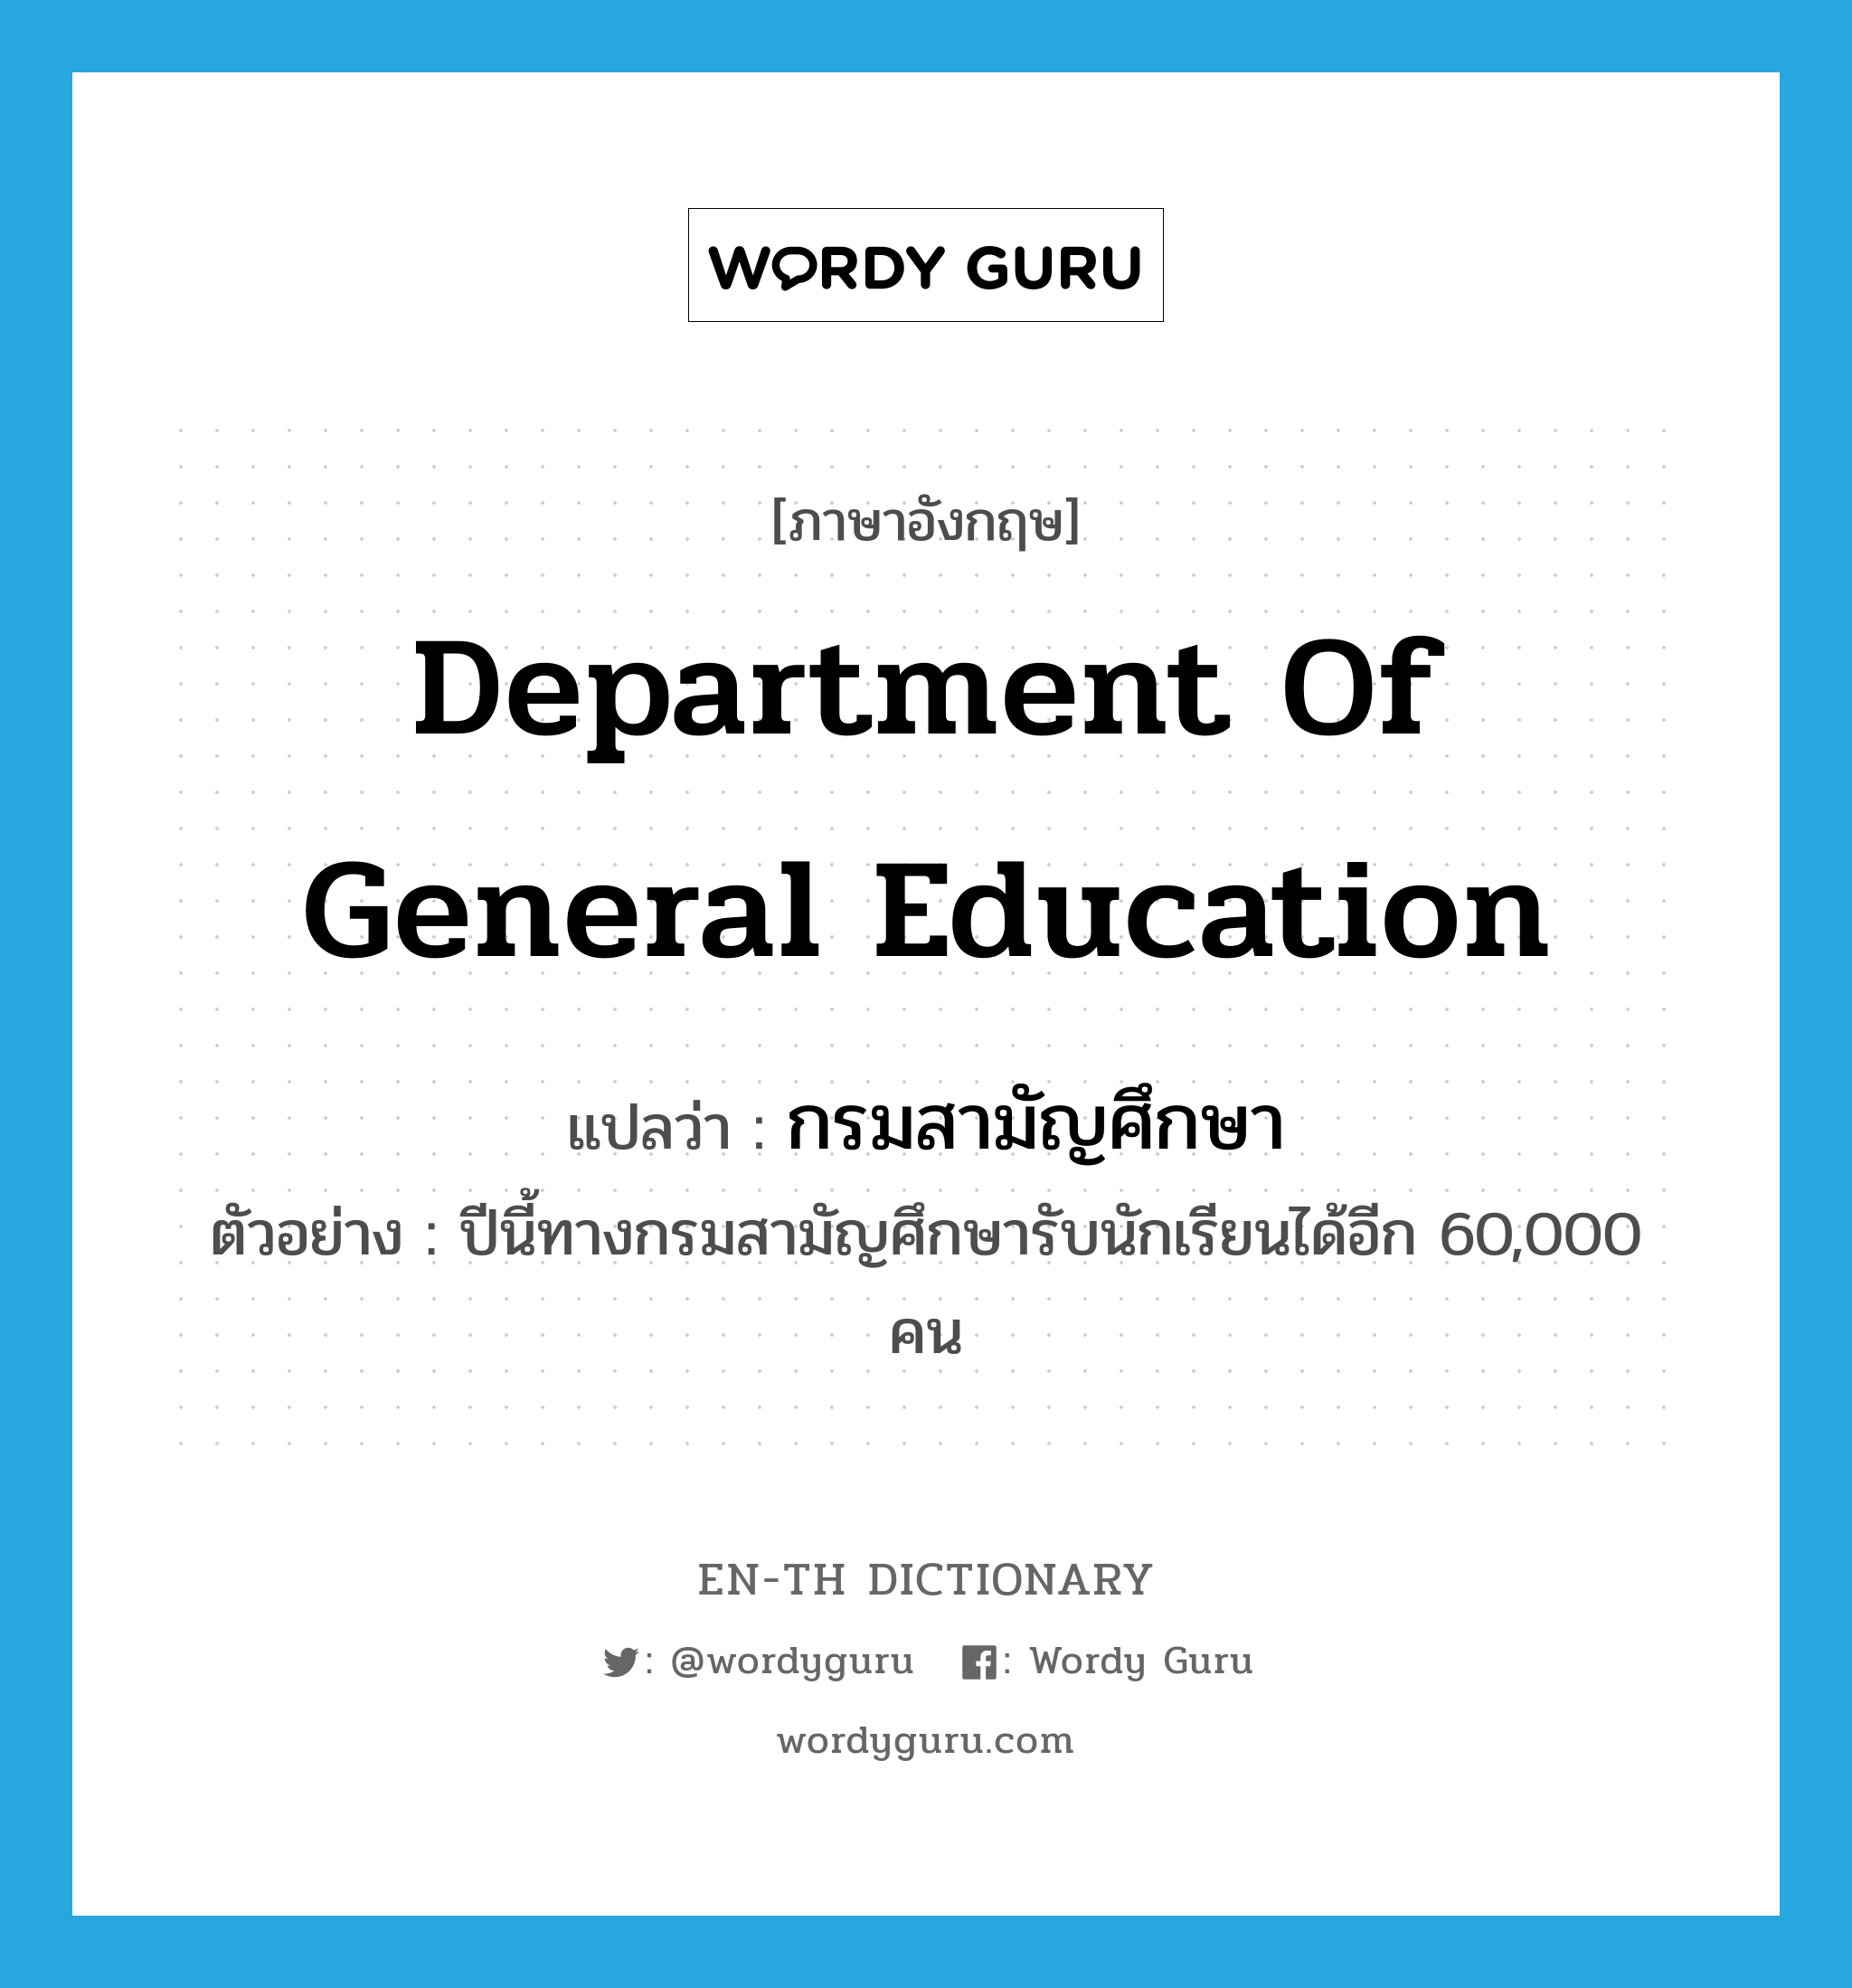 Department of General Education แปลว่า?, คำศัพท์ภาษาอังกฤษ Department of General Education แปลว่า กรมสามัญศึกษา ประเภท N ตัวอย่าง ปีนี้ทางกรมสามัญศึกษารับนักเรียนได้อีก 60,000 คน หมวด N